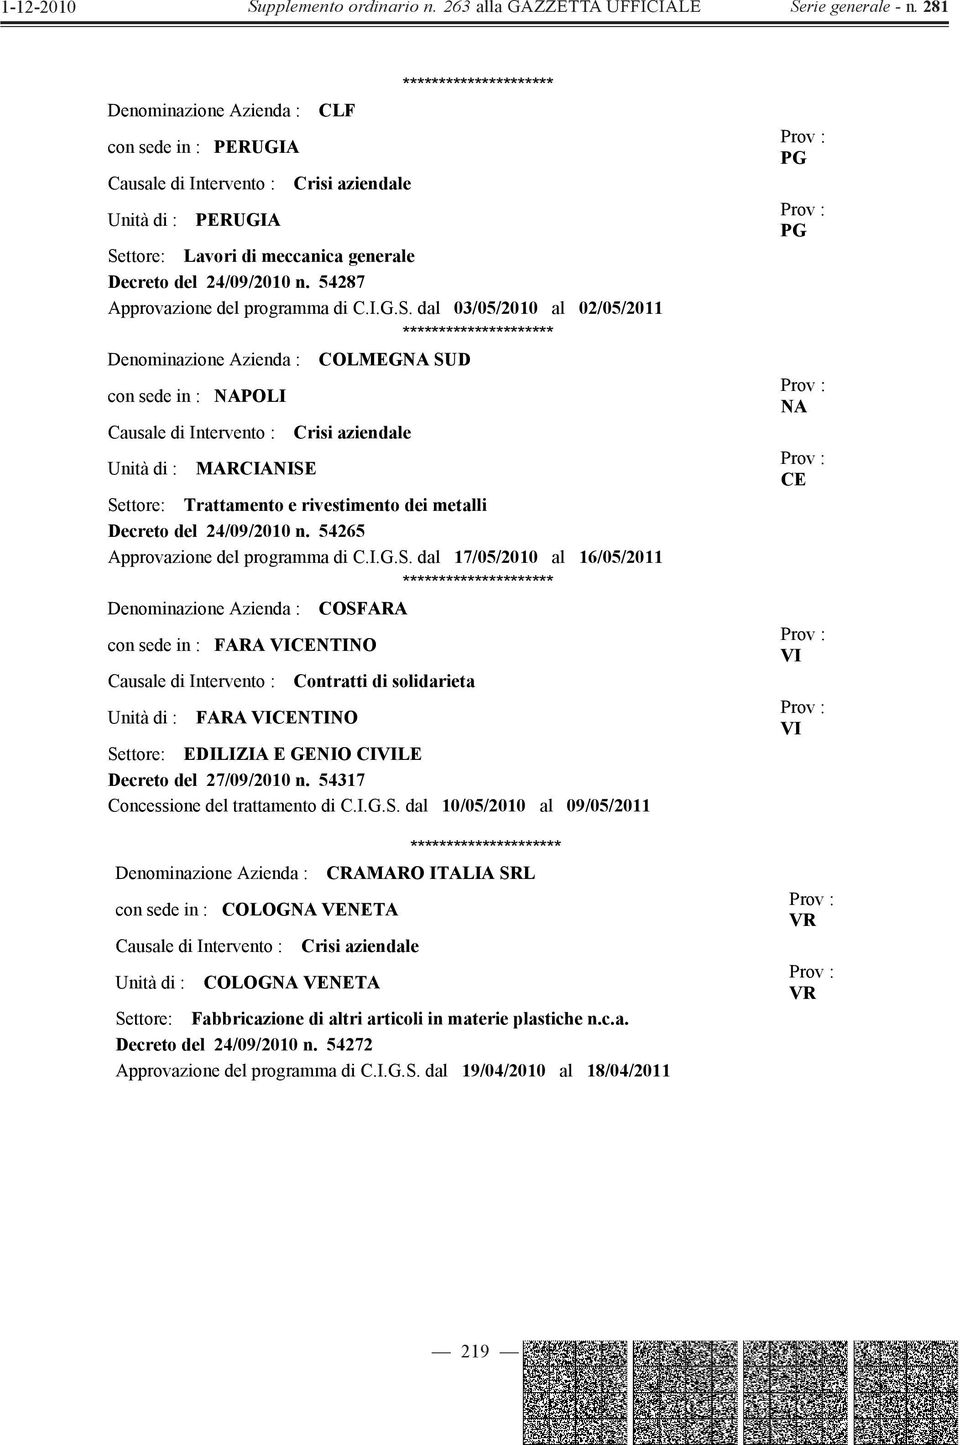 dal 03/05/2010 al 02/05/2011 Denominazione Azienda : COLMEGNA SUD con sede in : NAPOLI Unità di : MARCIANISE Settore: Trattamento e rivestimento dei metalli Decreto del 24/09/2010 n.